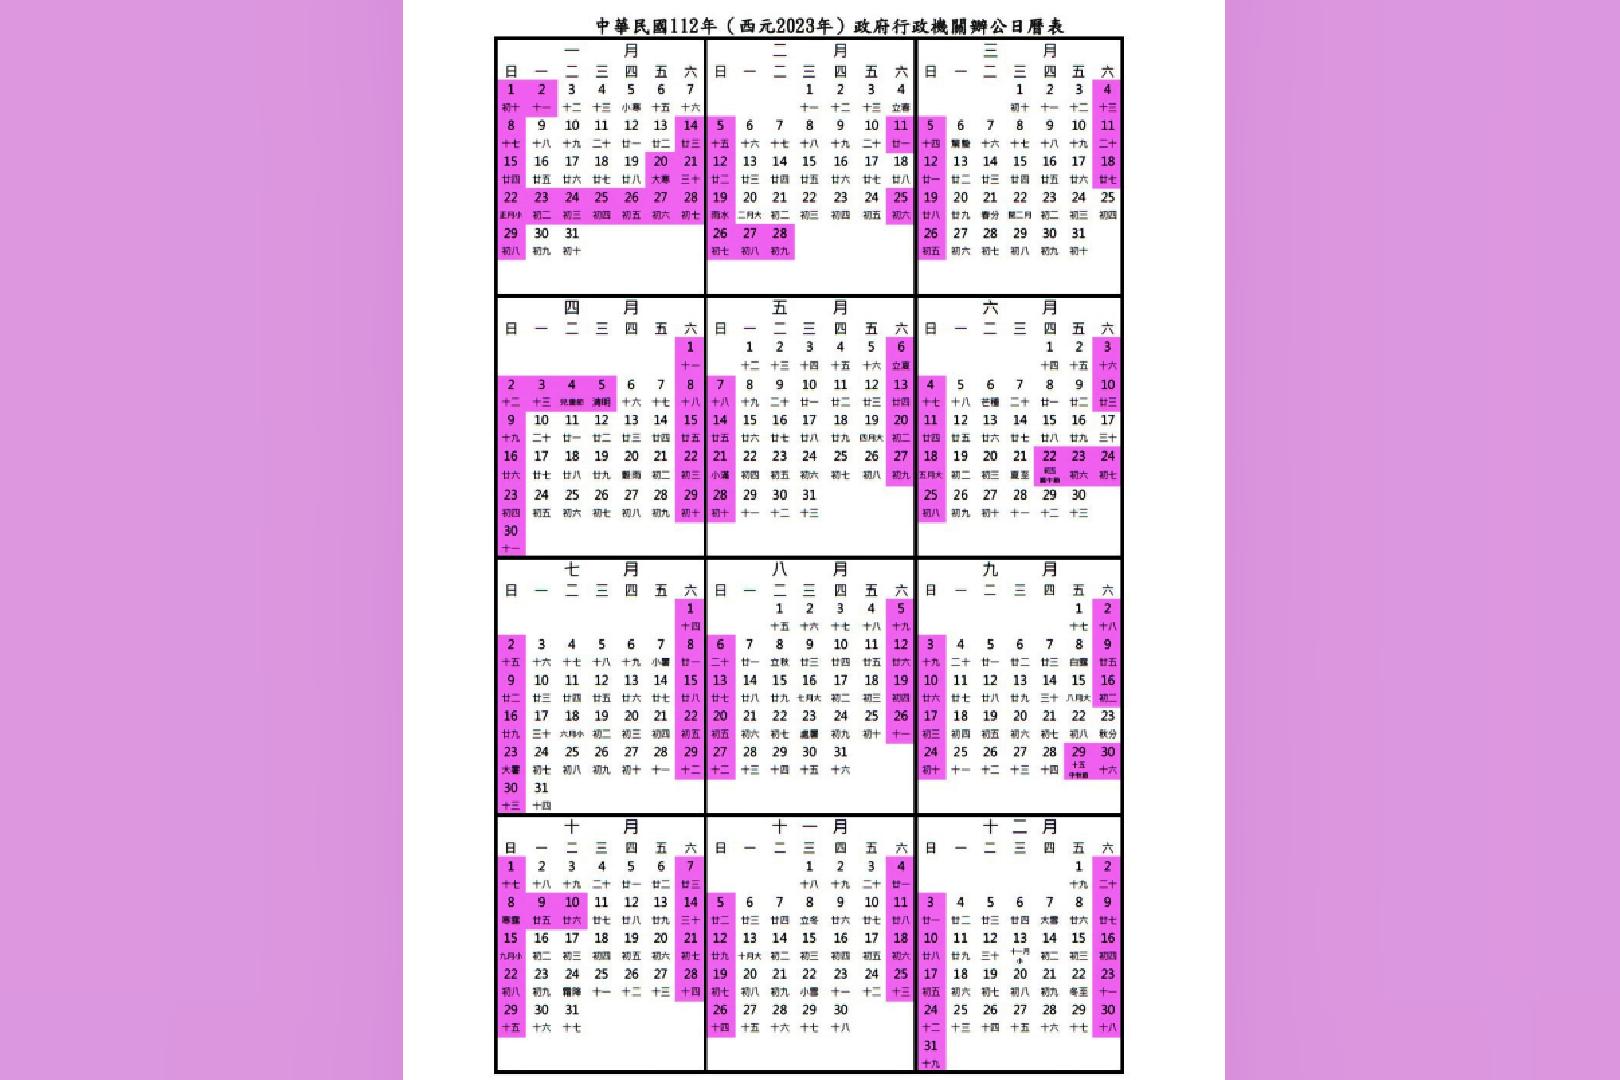 明年有7個連假！行政院公布112年行政日曆表